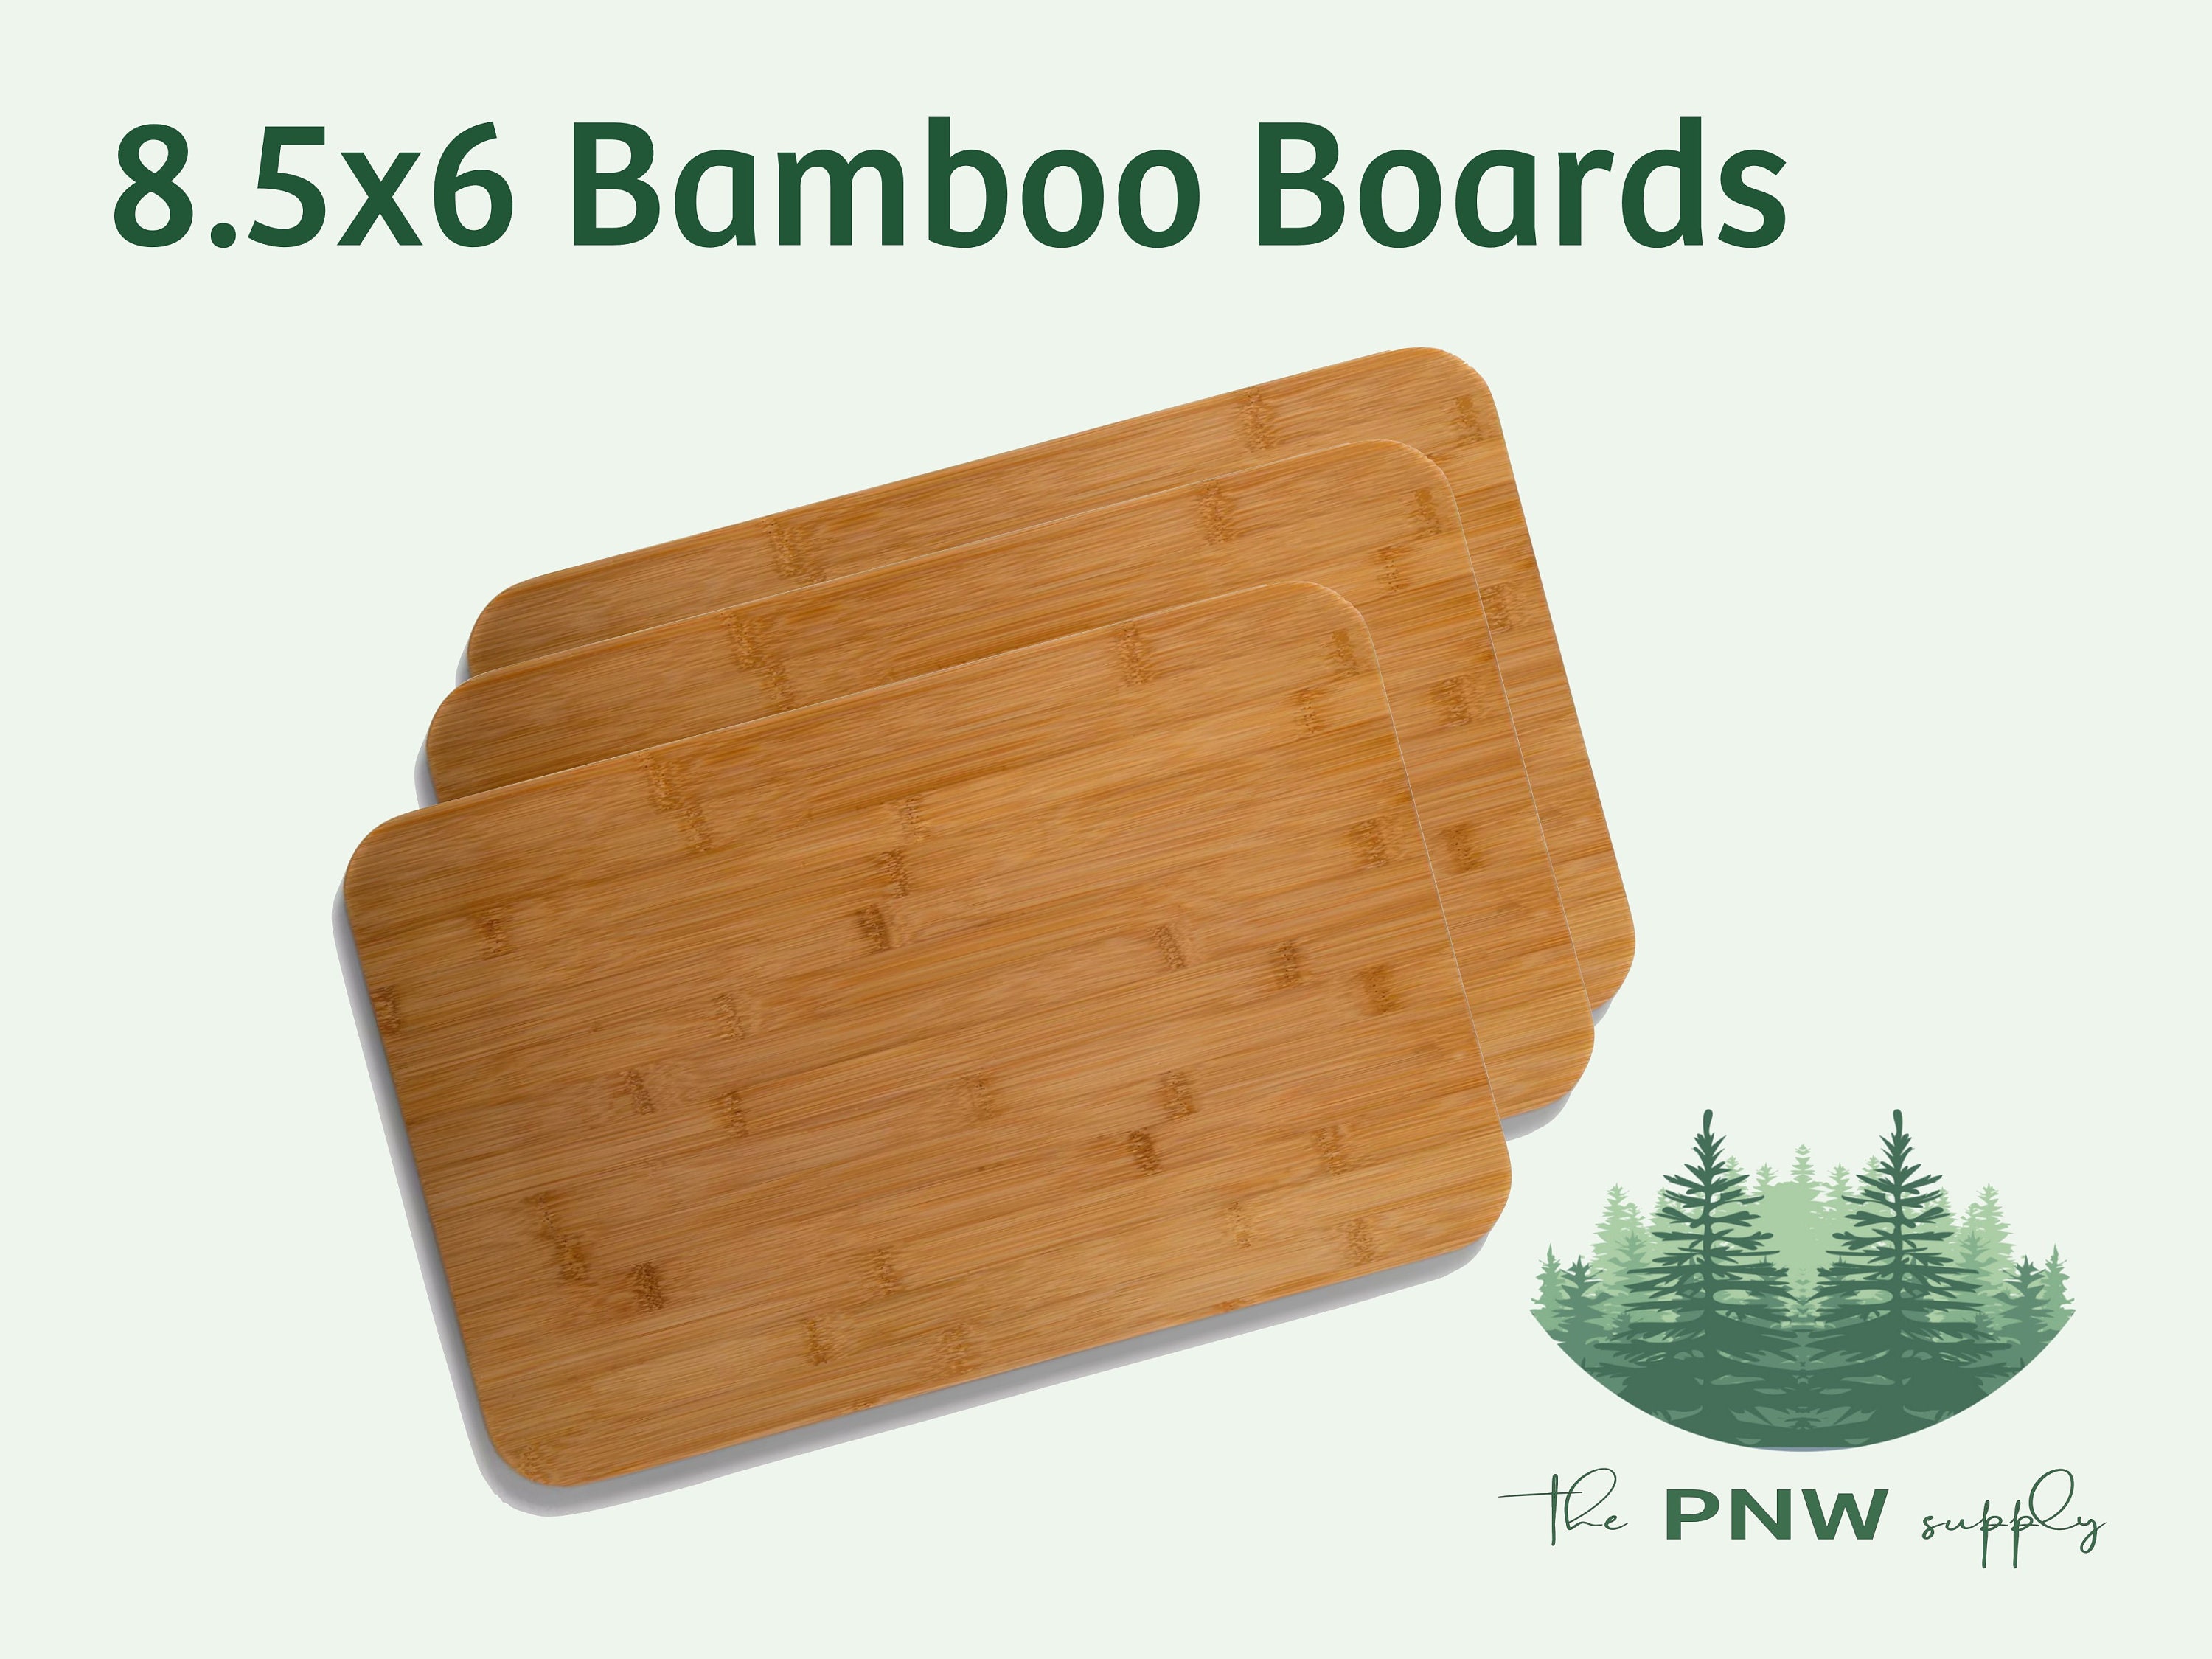 12pc Bulk 12X9 Rectangular Plain Bamboo Cutting Board